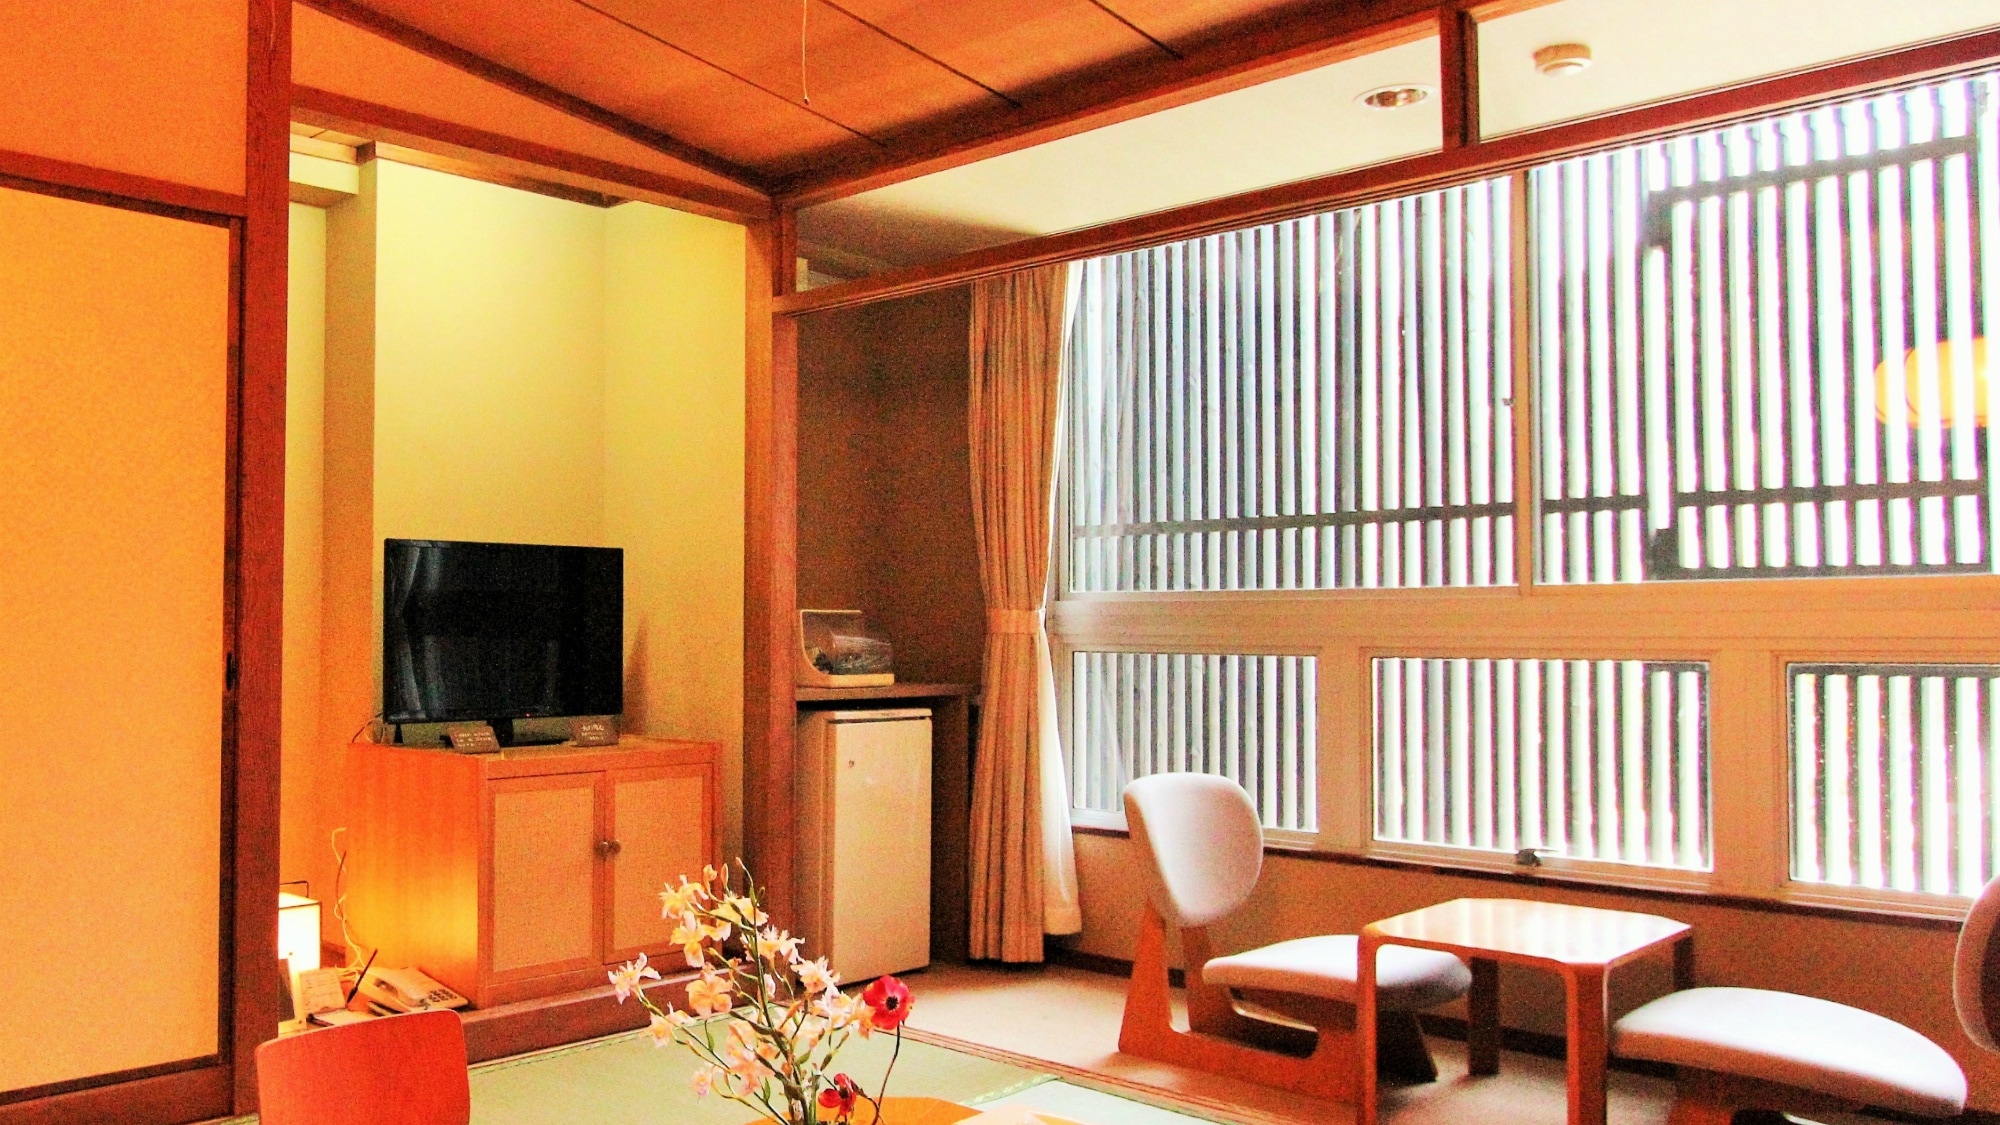 ห้องสไตล์ญี่ปุ่น 10 เสื่อทาทามิ เพลิดเพลินกับพื้นที่ญี่ปุ่นที่กว้างขวาง